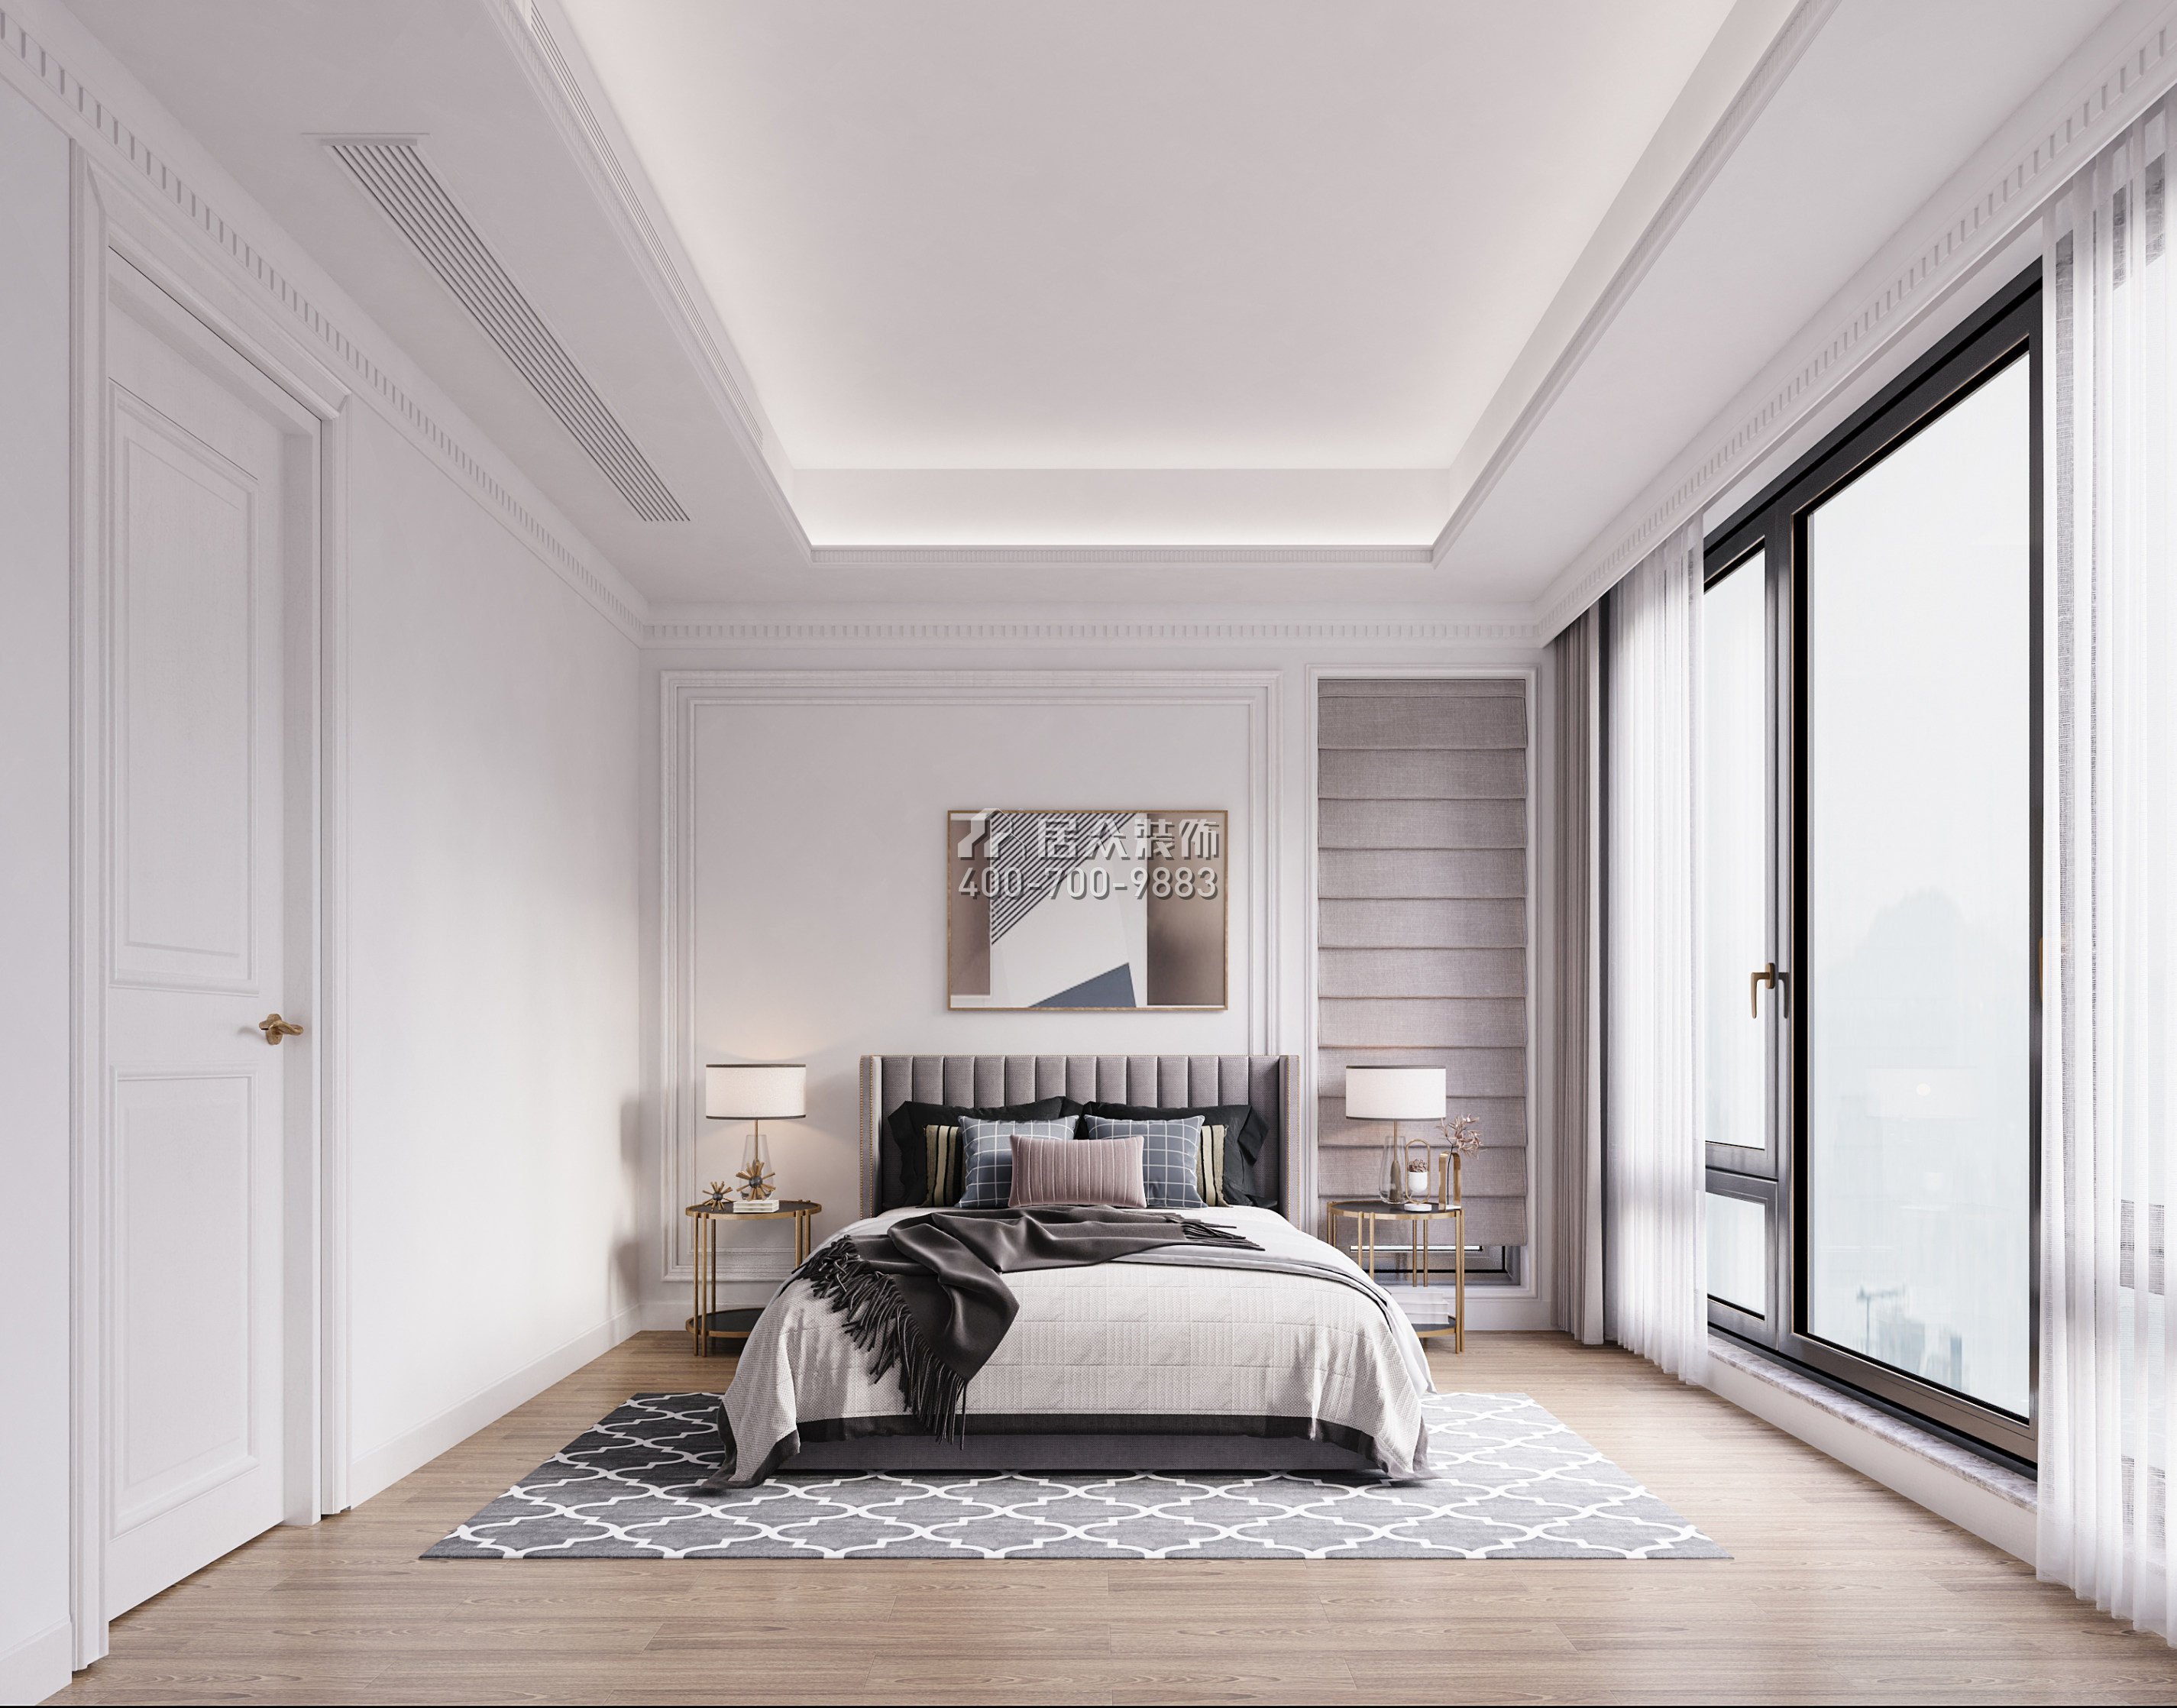 九洲保利天河270平方米混搭风格别墅户型卧室装修效果图